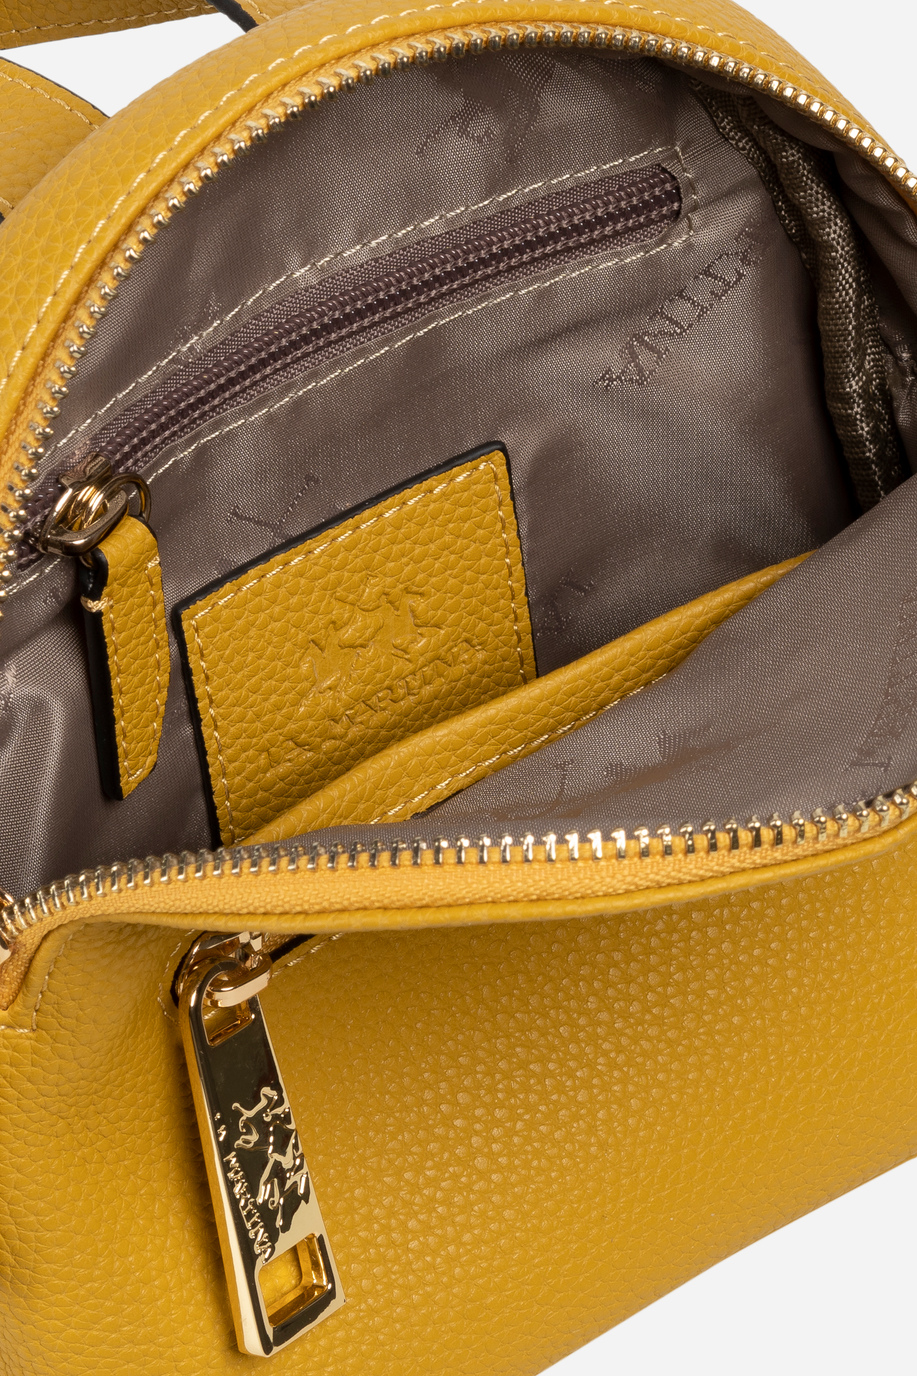 Damentasche aus Leder - Accessoires | La Martina - Official Online Shop